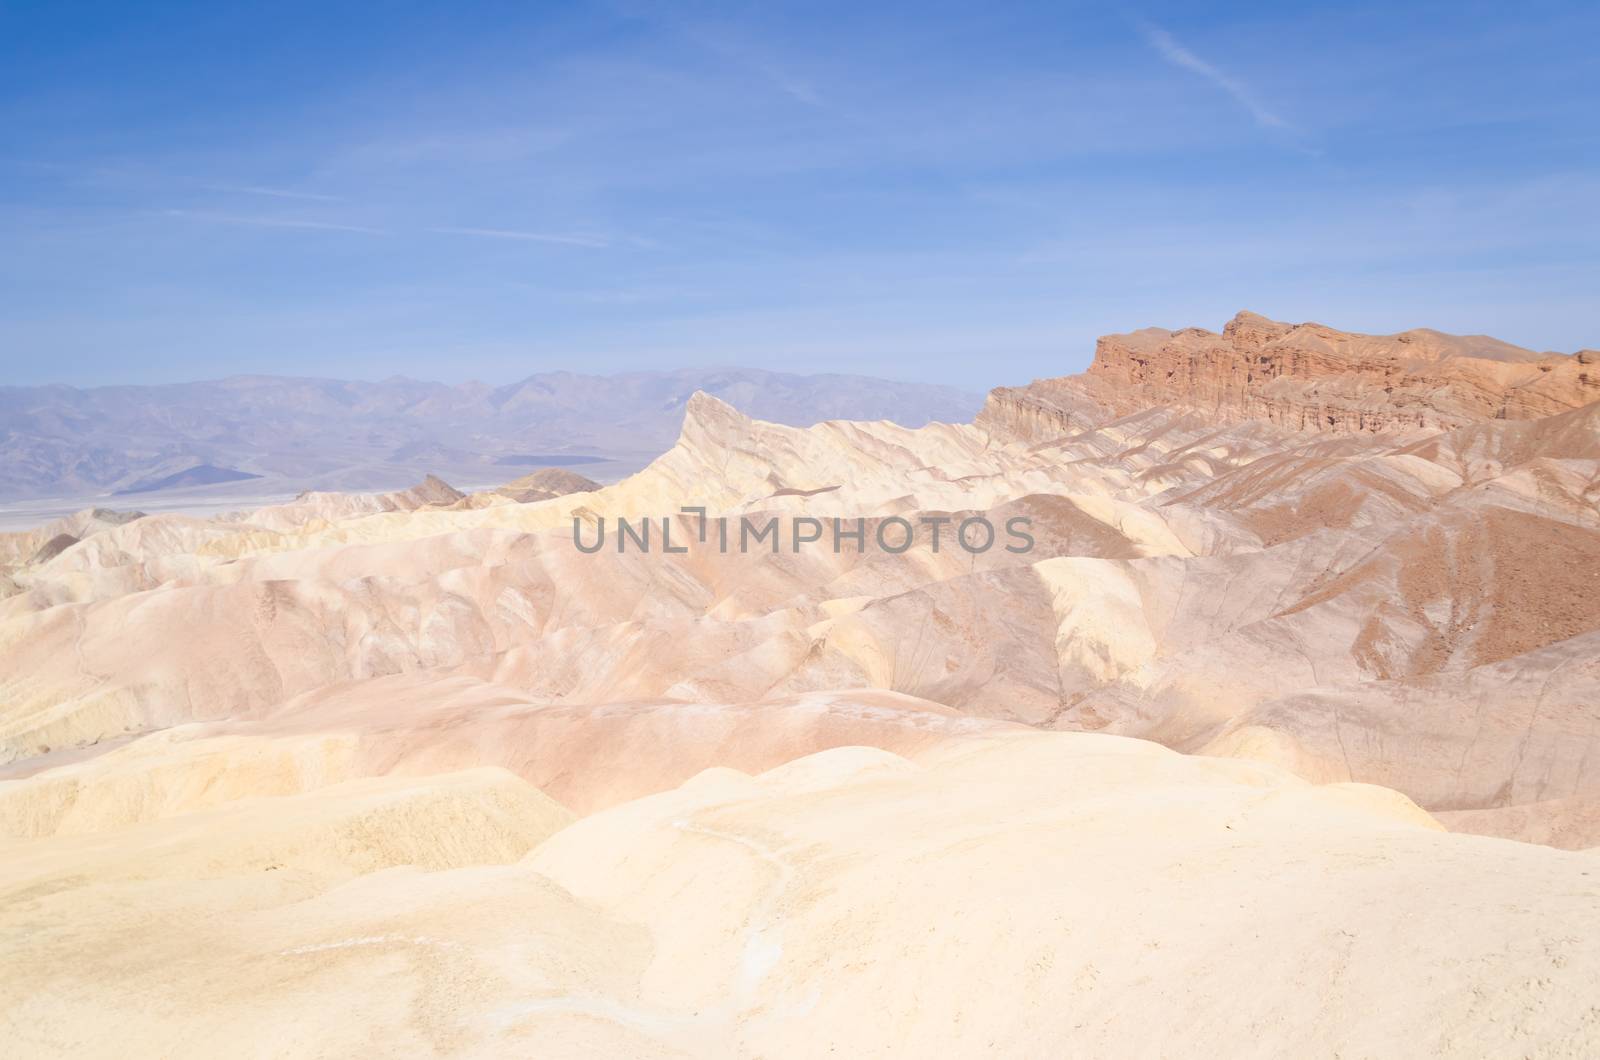 Zabriskie Point in Death Valley National Park, California, USA